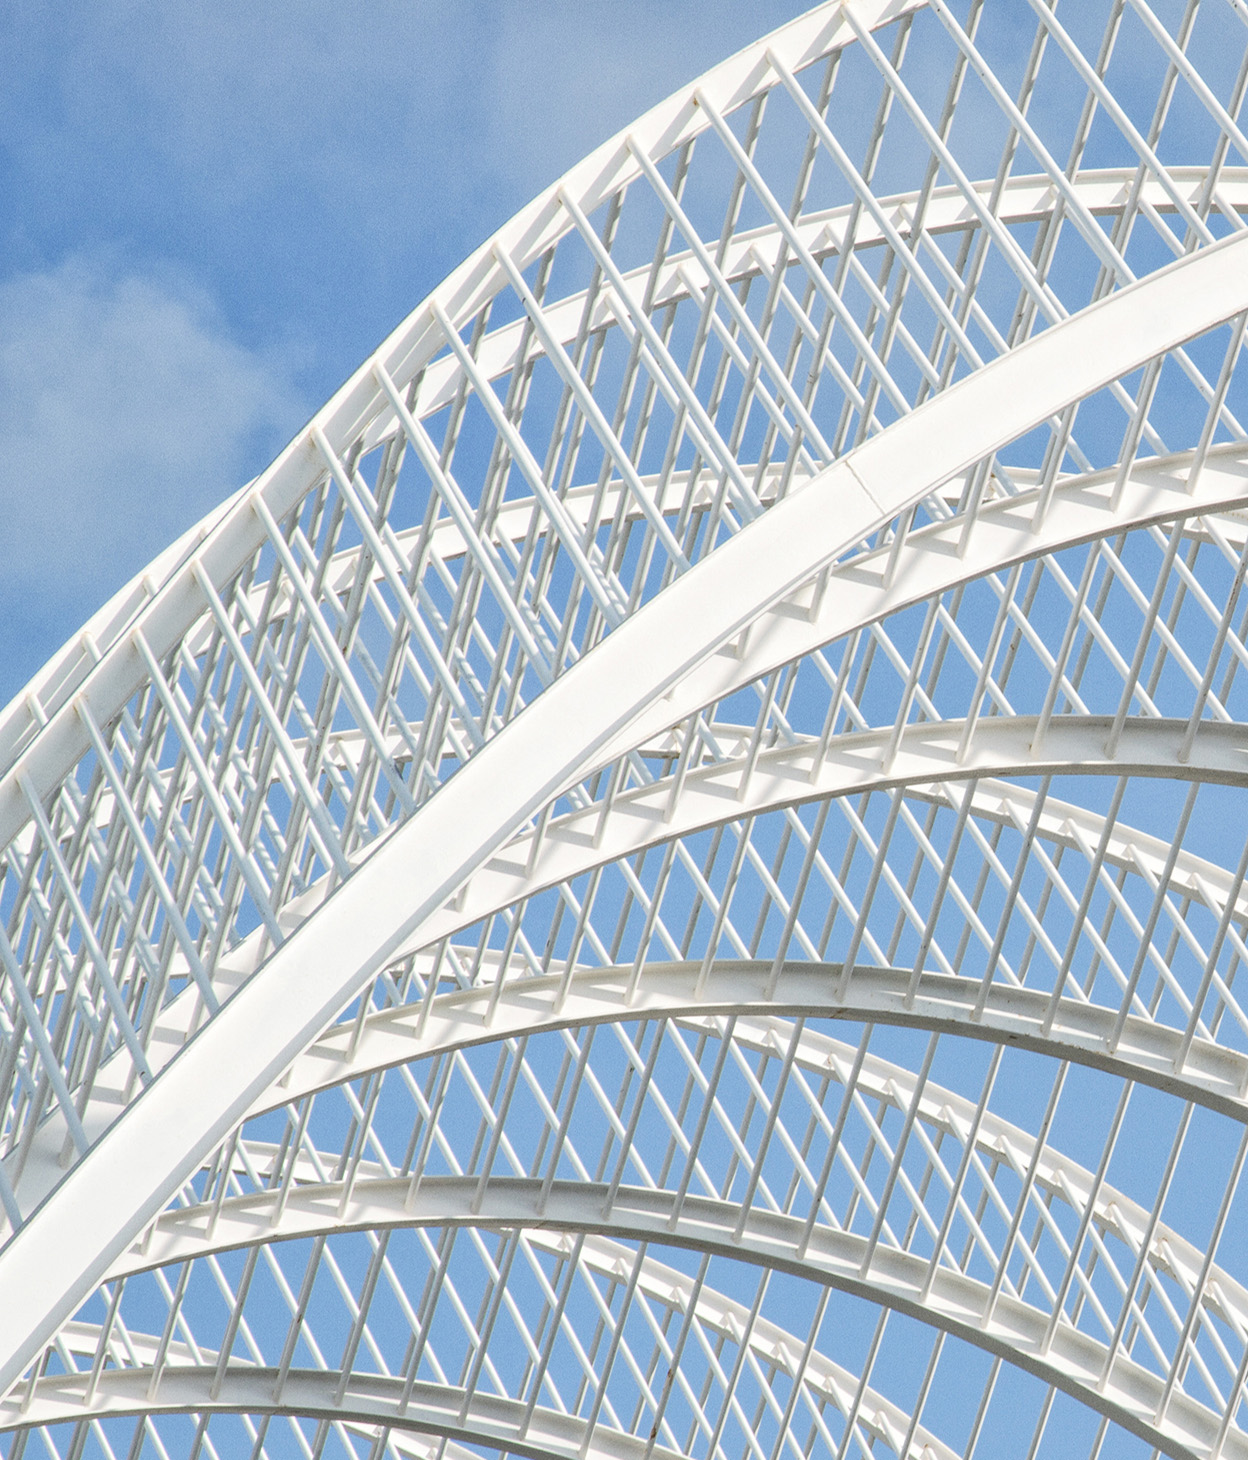 Foto de uma estrutura de arcos metálicos contra um céu azul